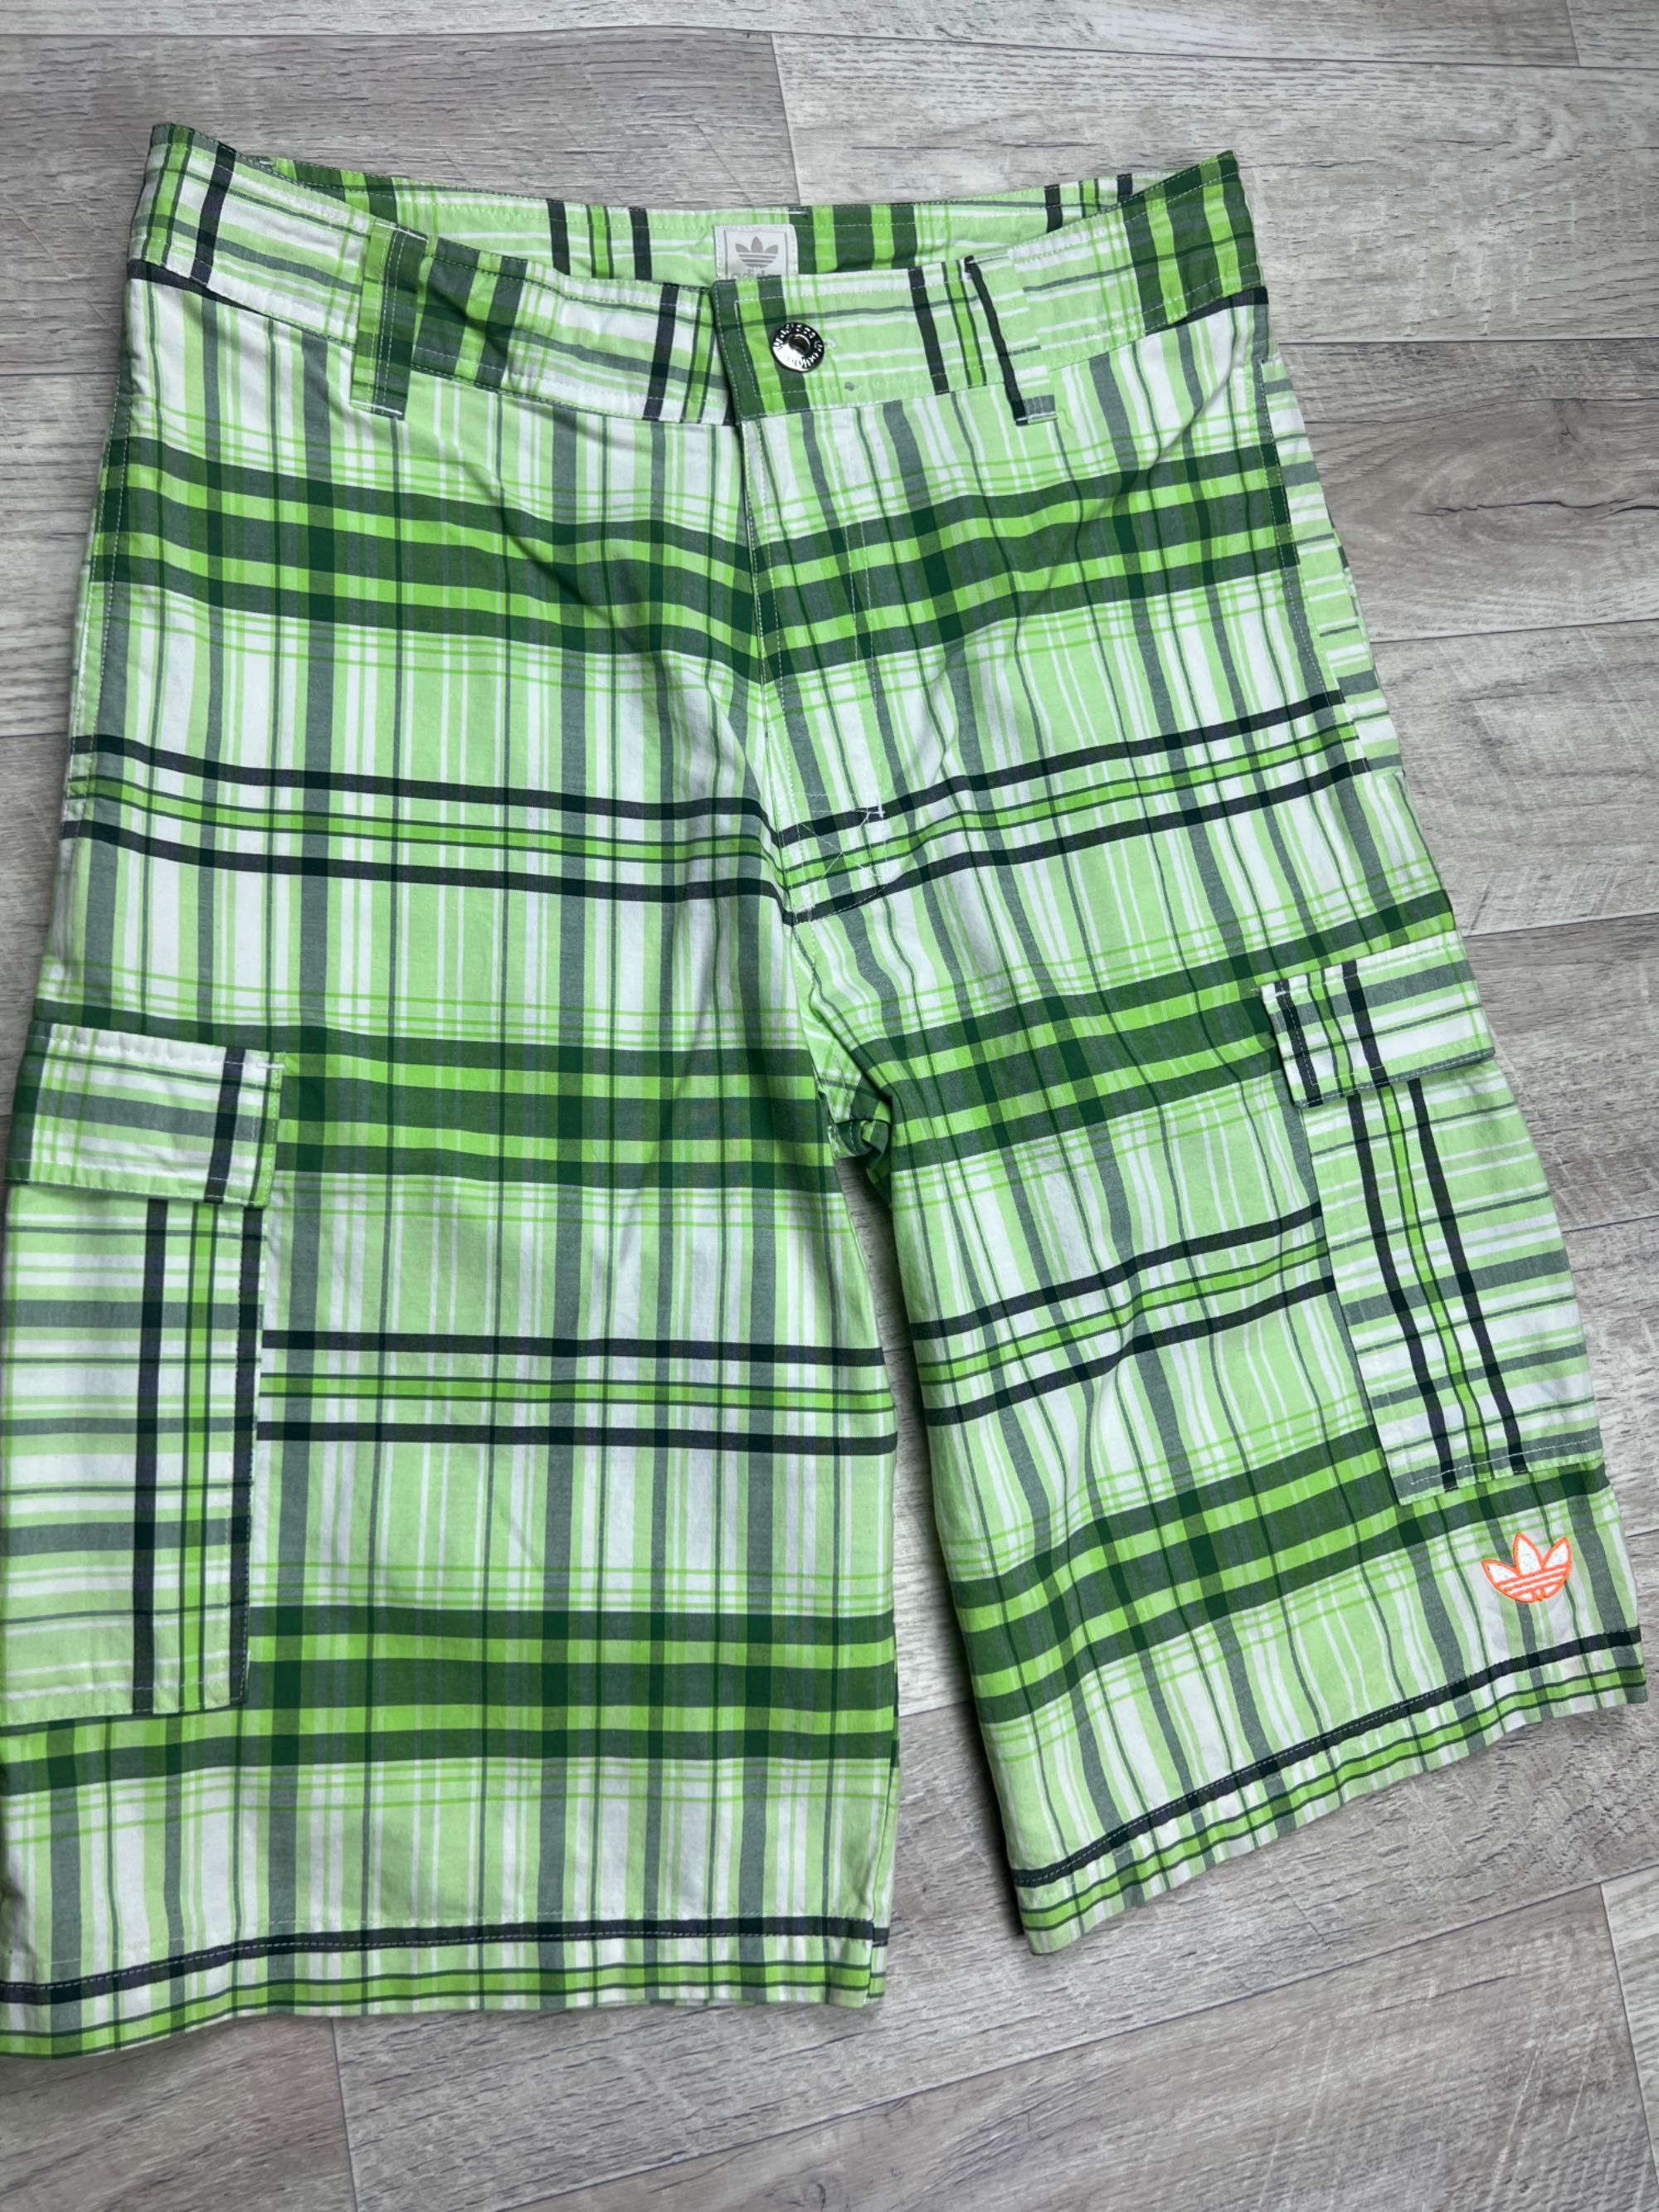 Adidas loose fit шорты M размер 32 с этикеткой клетчатые зеленые